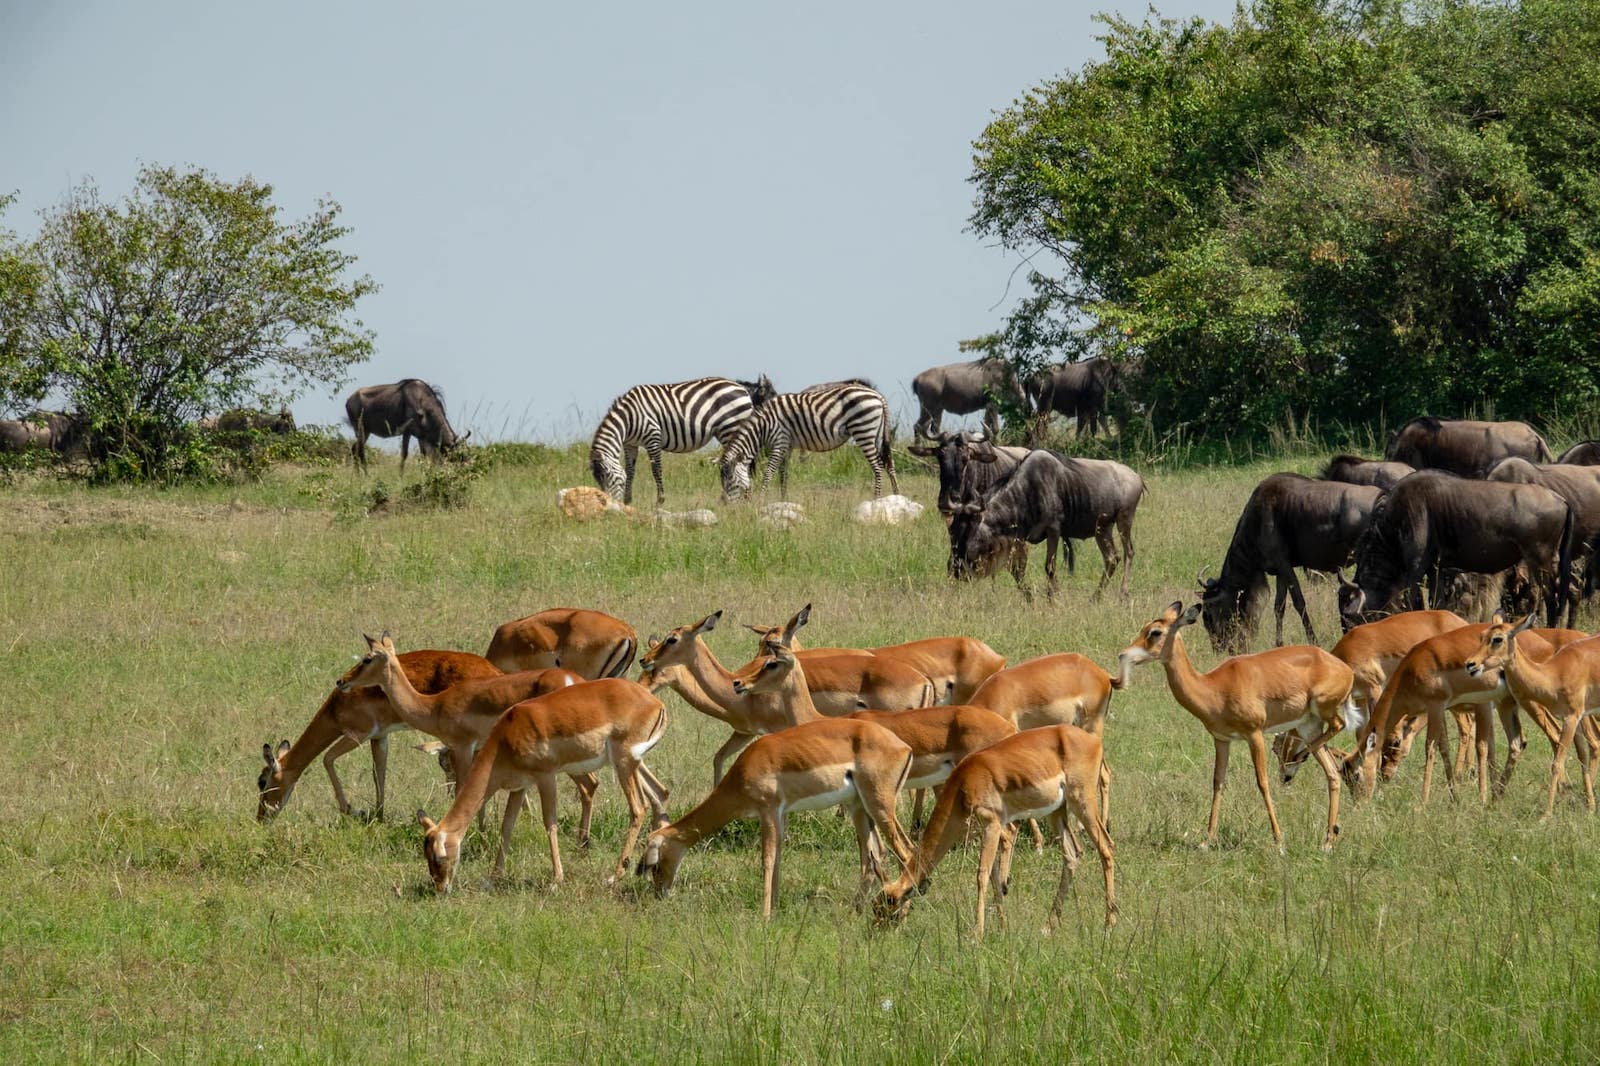 meaning of safari njema in swahili